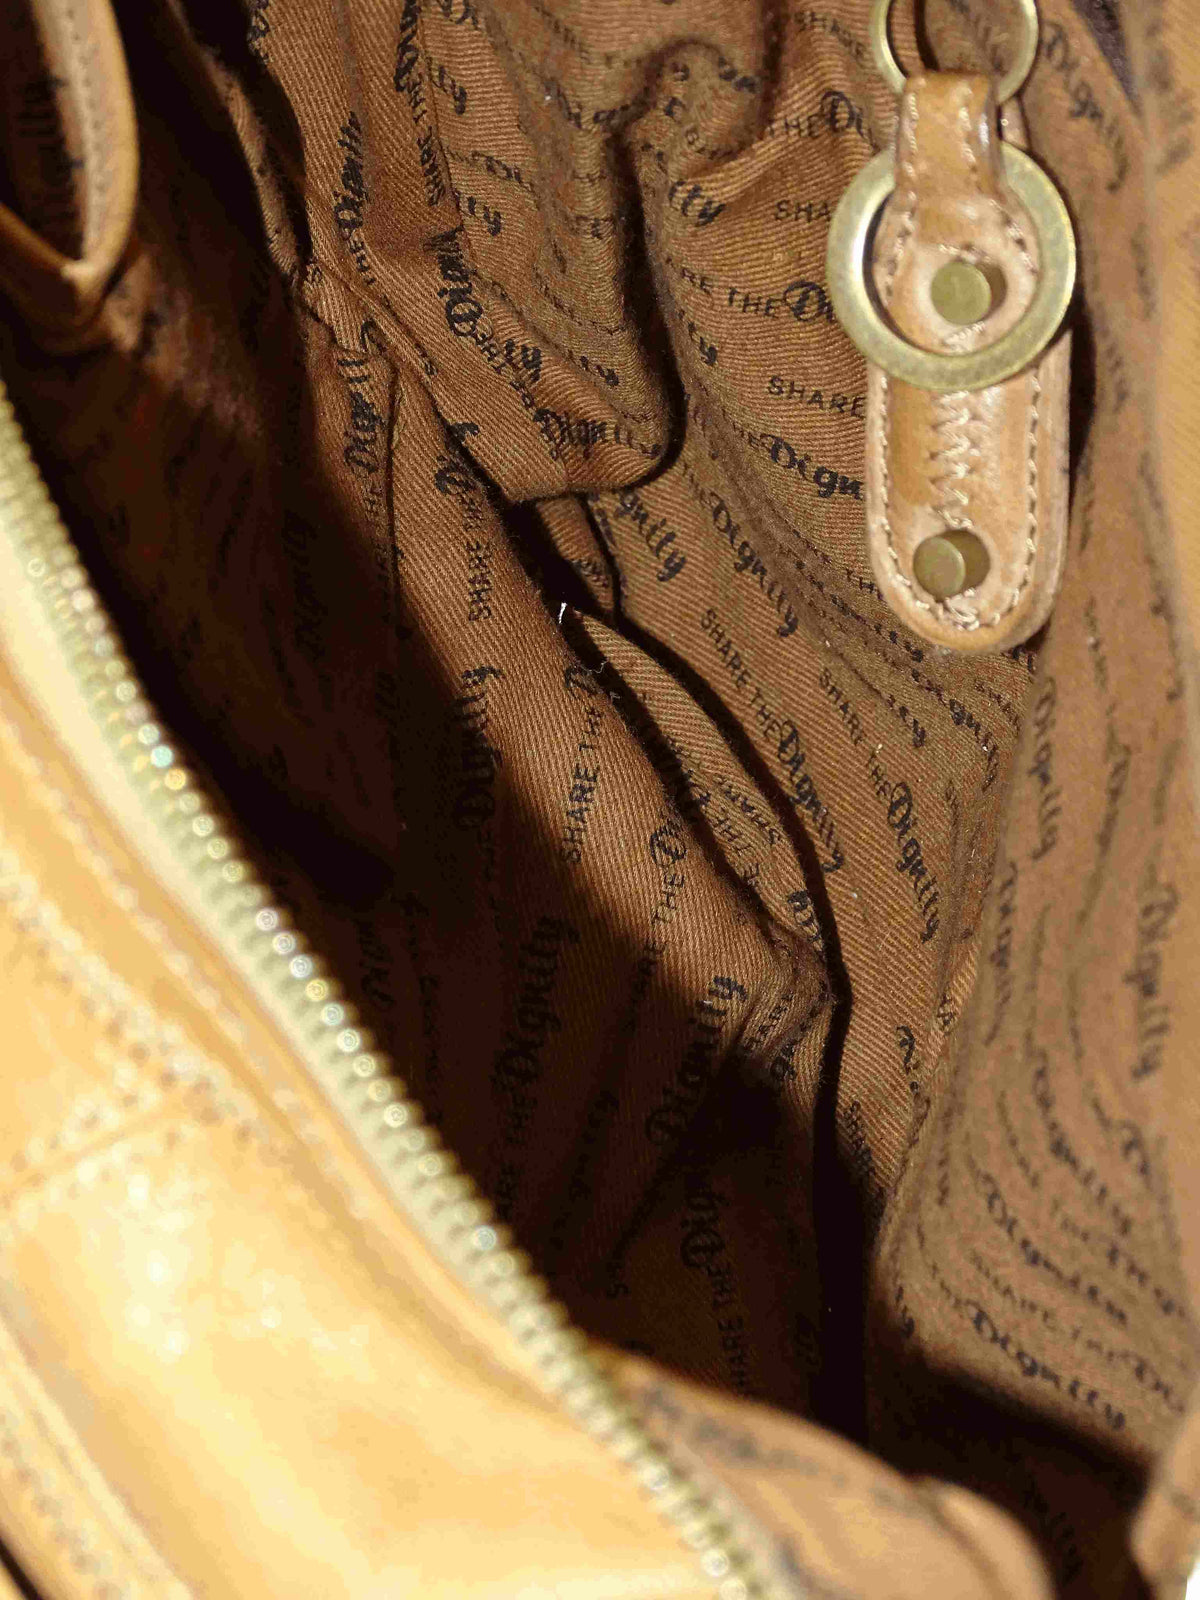 Sharethedignity Brown Leather Shoulder Bag